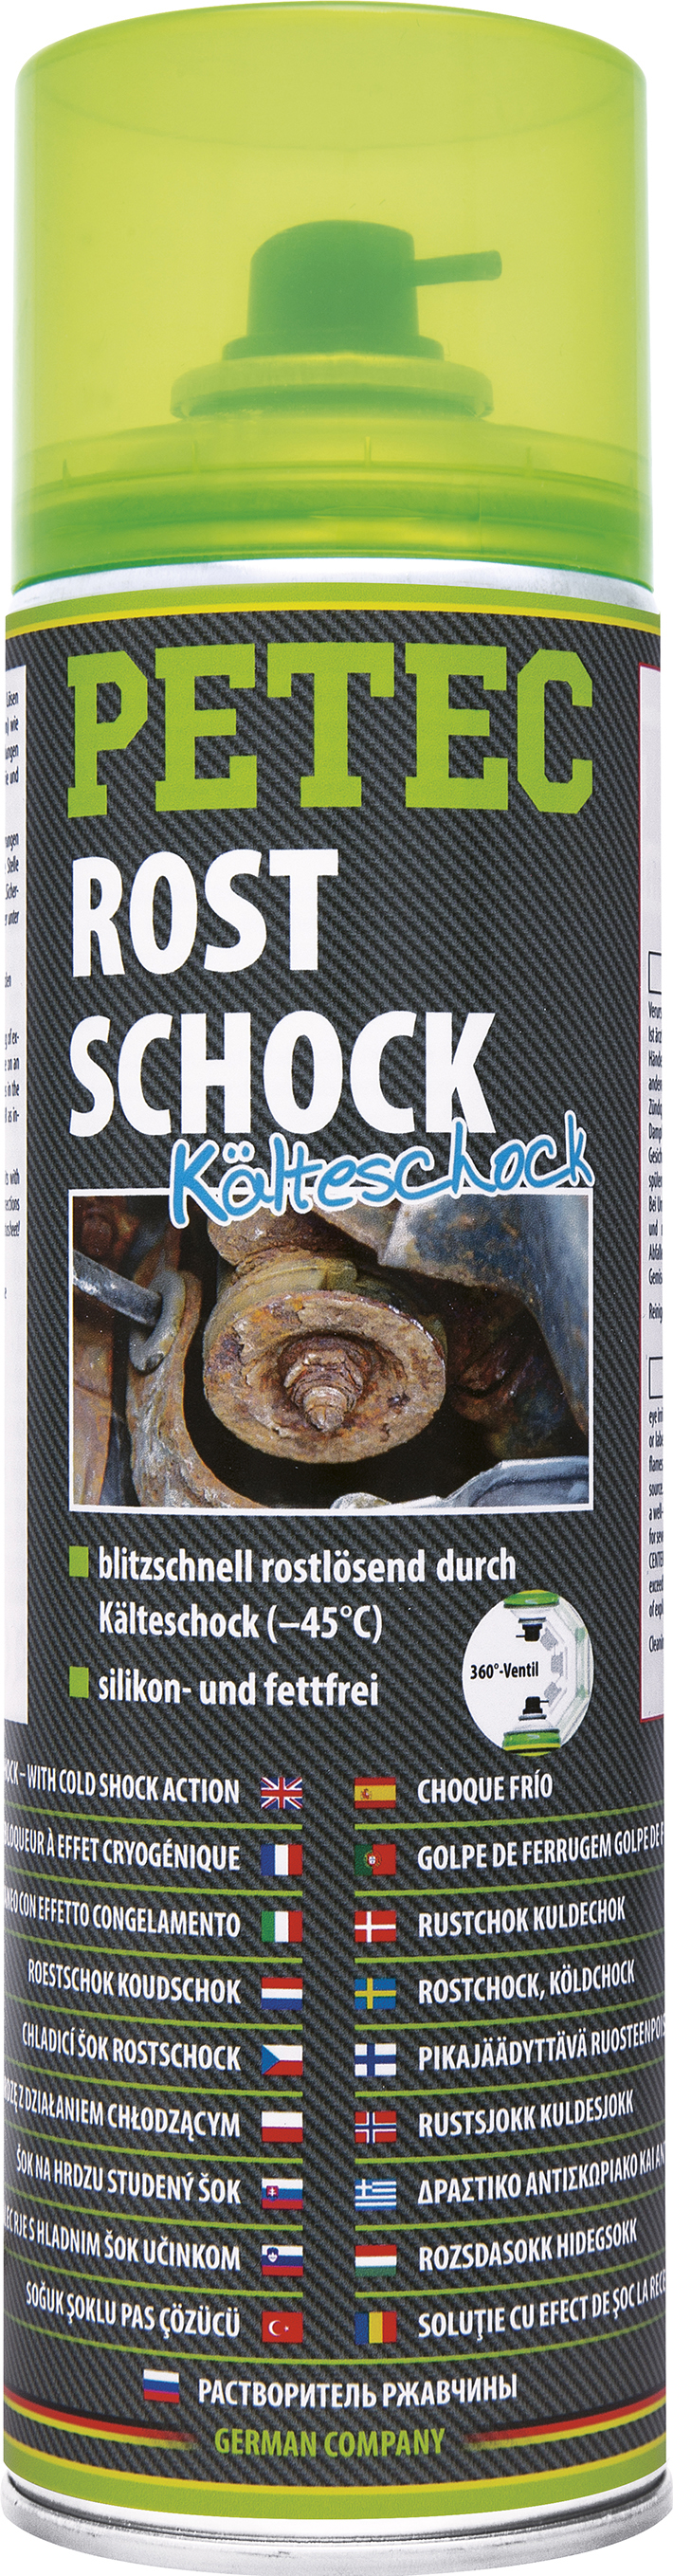 Rostschock, 500ml